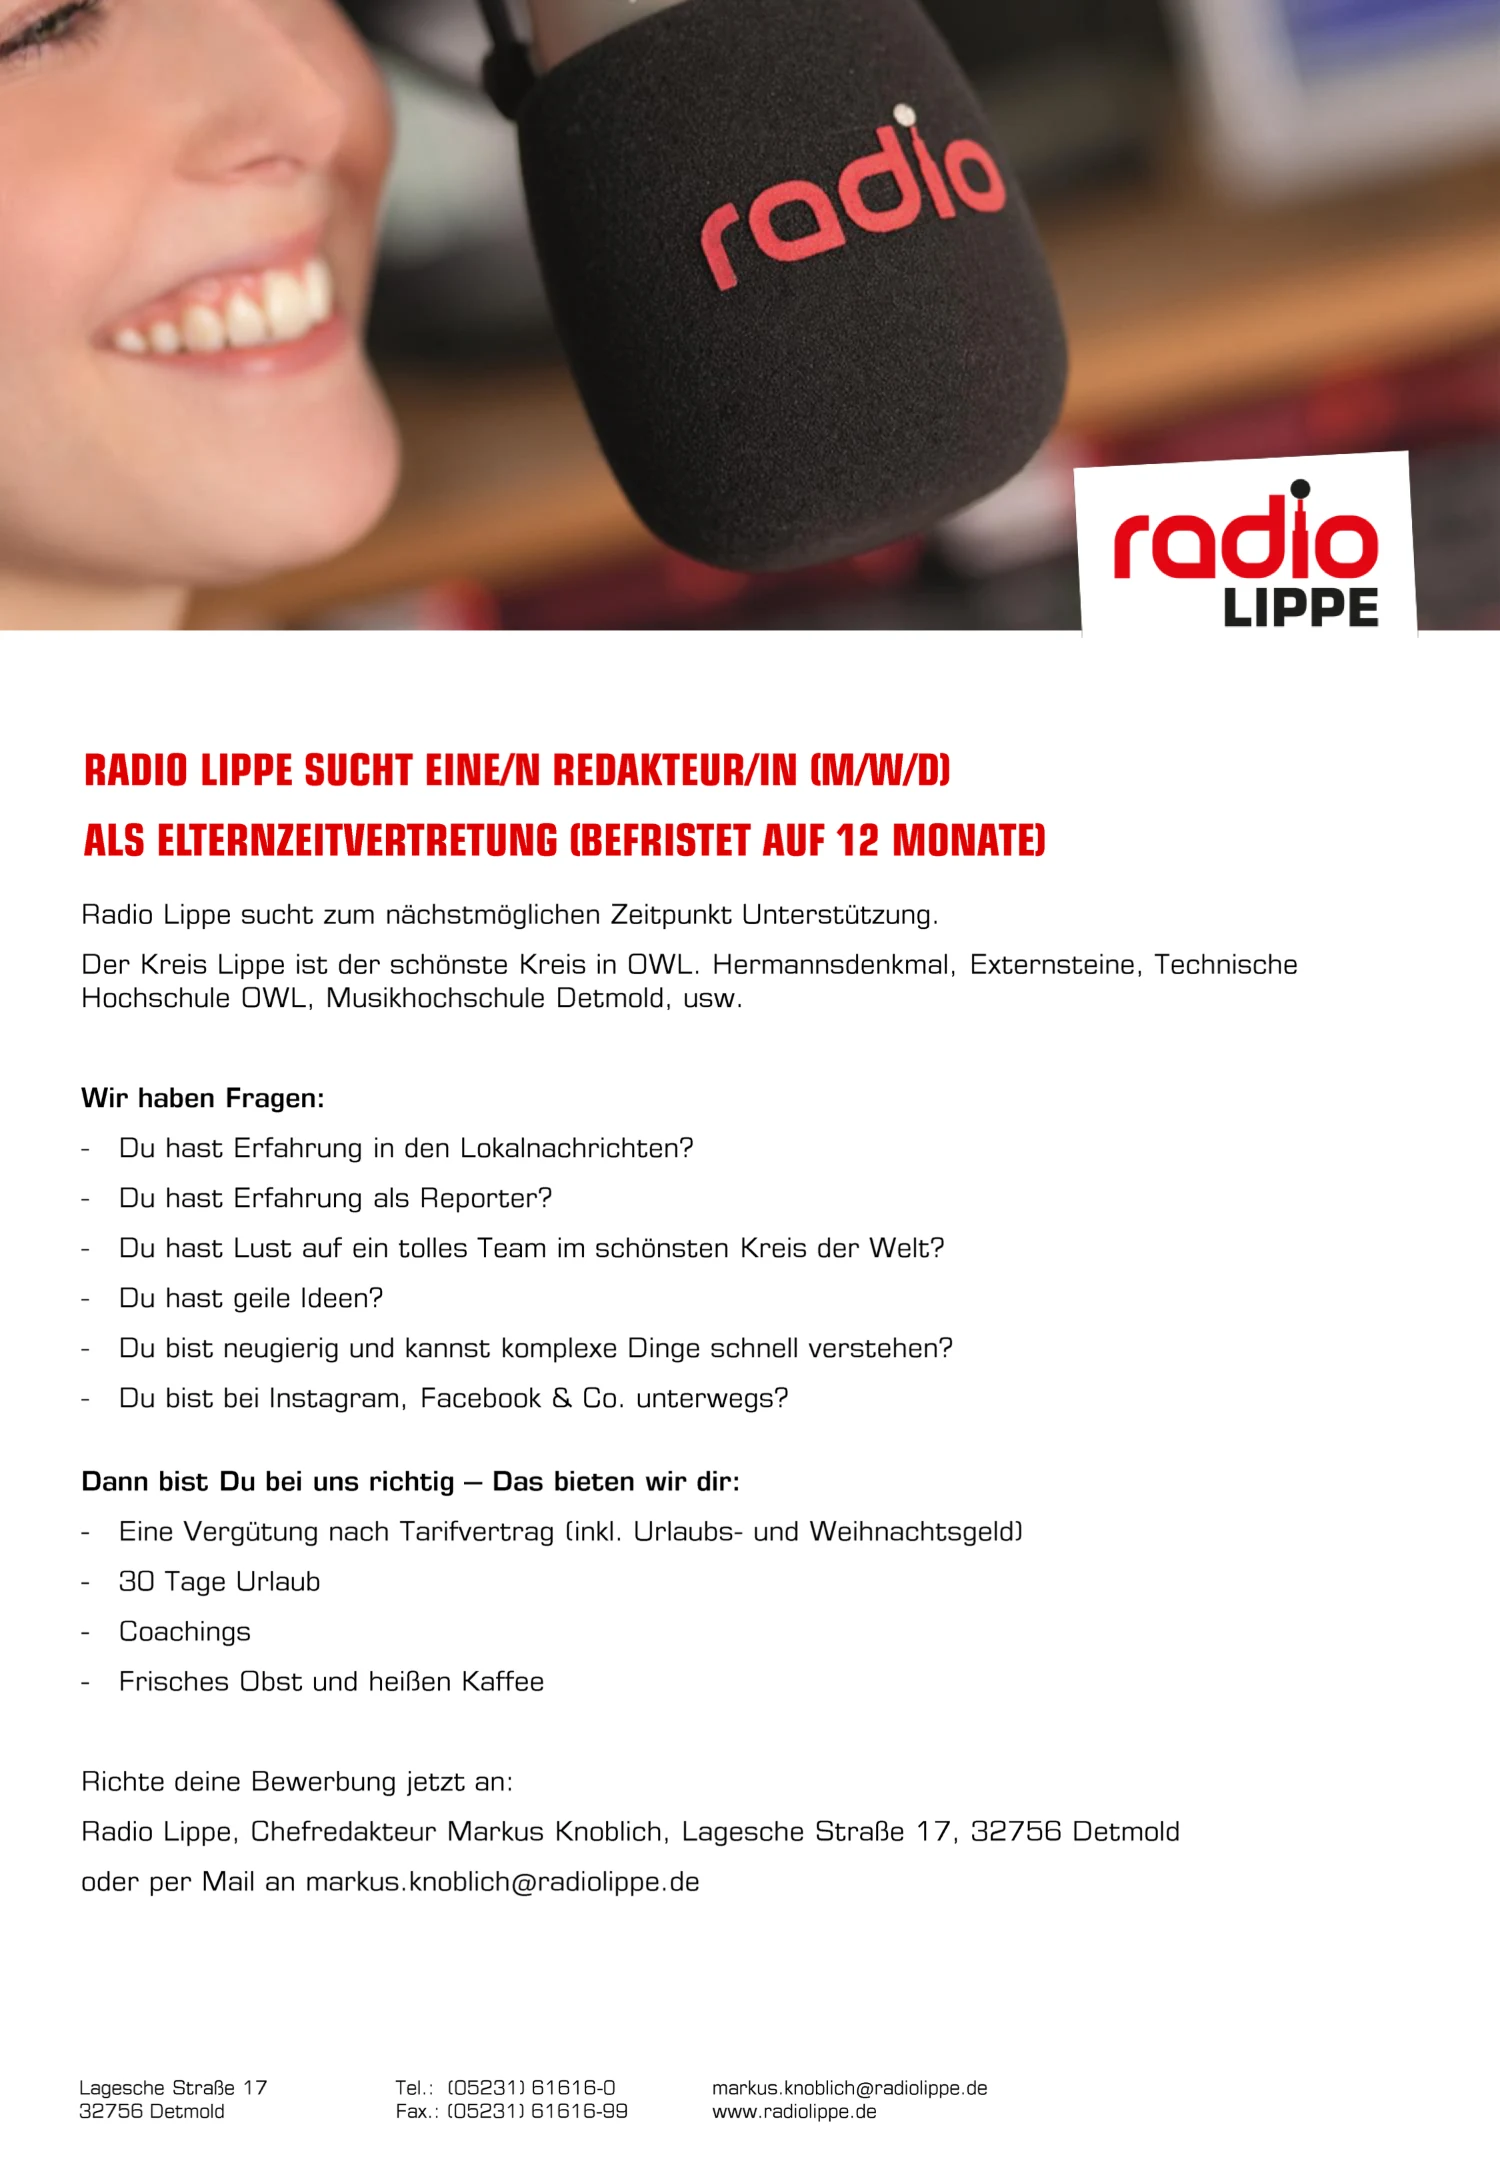 Radio Lippe sucht zum nächstmöglichen Zeitpunkt eine/n Redakteur/in (m/w/d) als Elternzeitvertretung (befristet auf 12 Monate)